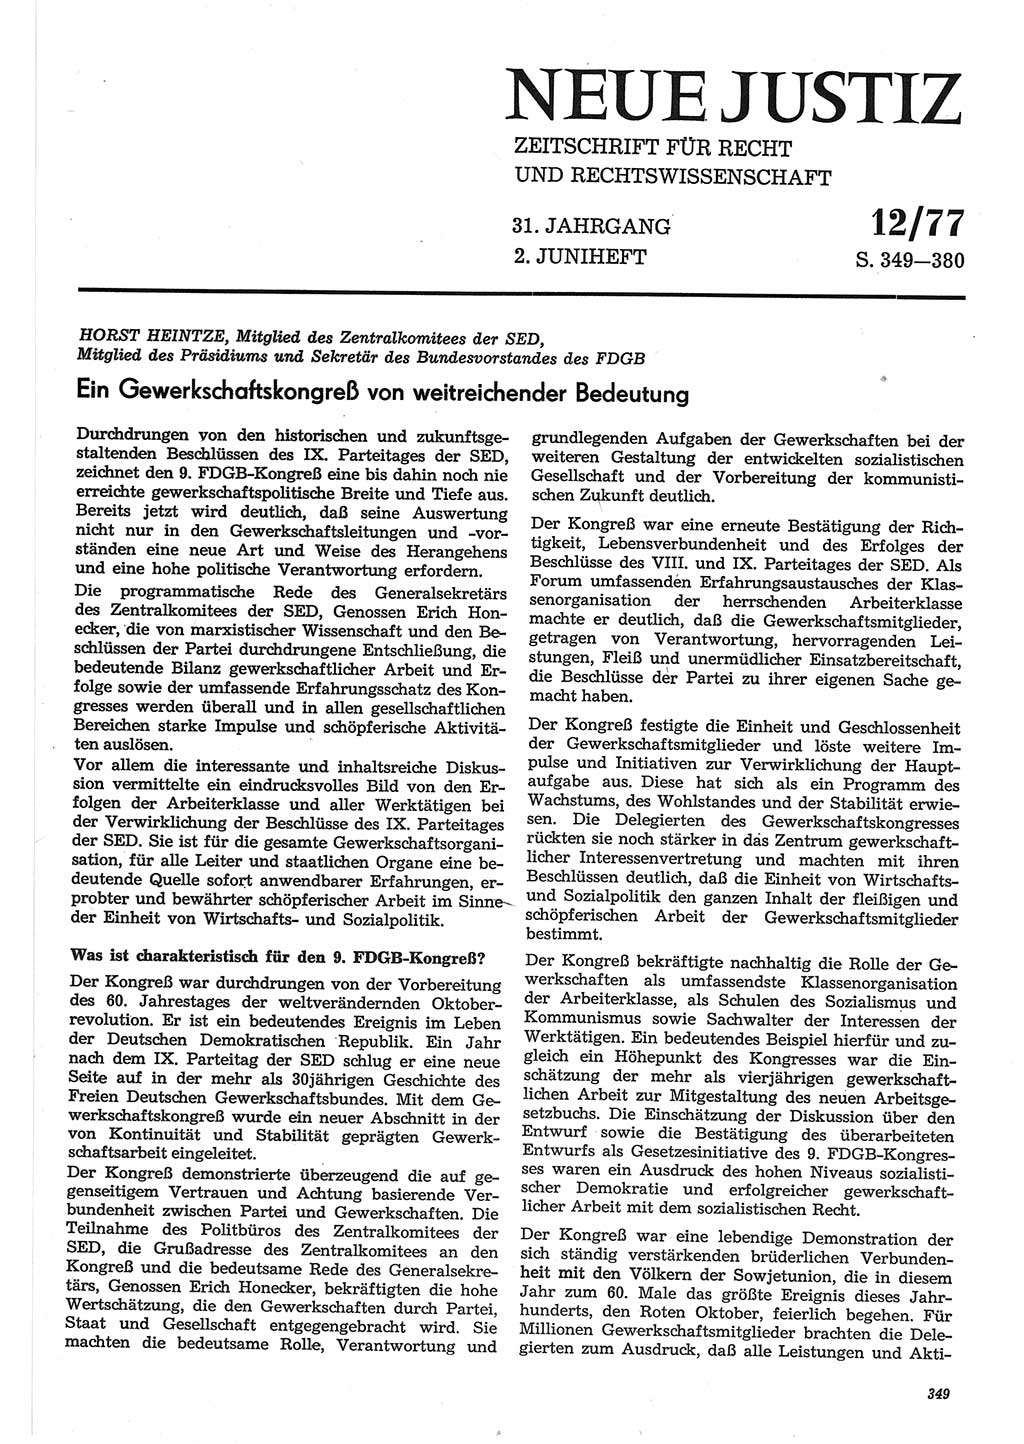 Neue Justiz (NJ), Zeitschrift für Recht und Rechtswissenschaft-Zeitschrift, sozialistisches Recht und Gesetzlichkeit, 31. Jahrgang 1977, Seite 349 (NJ DDR 1977, S. 349)